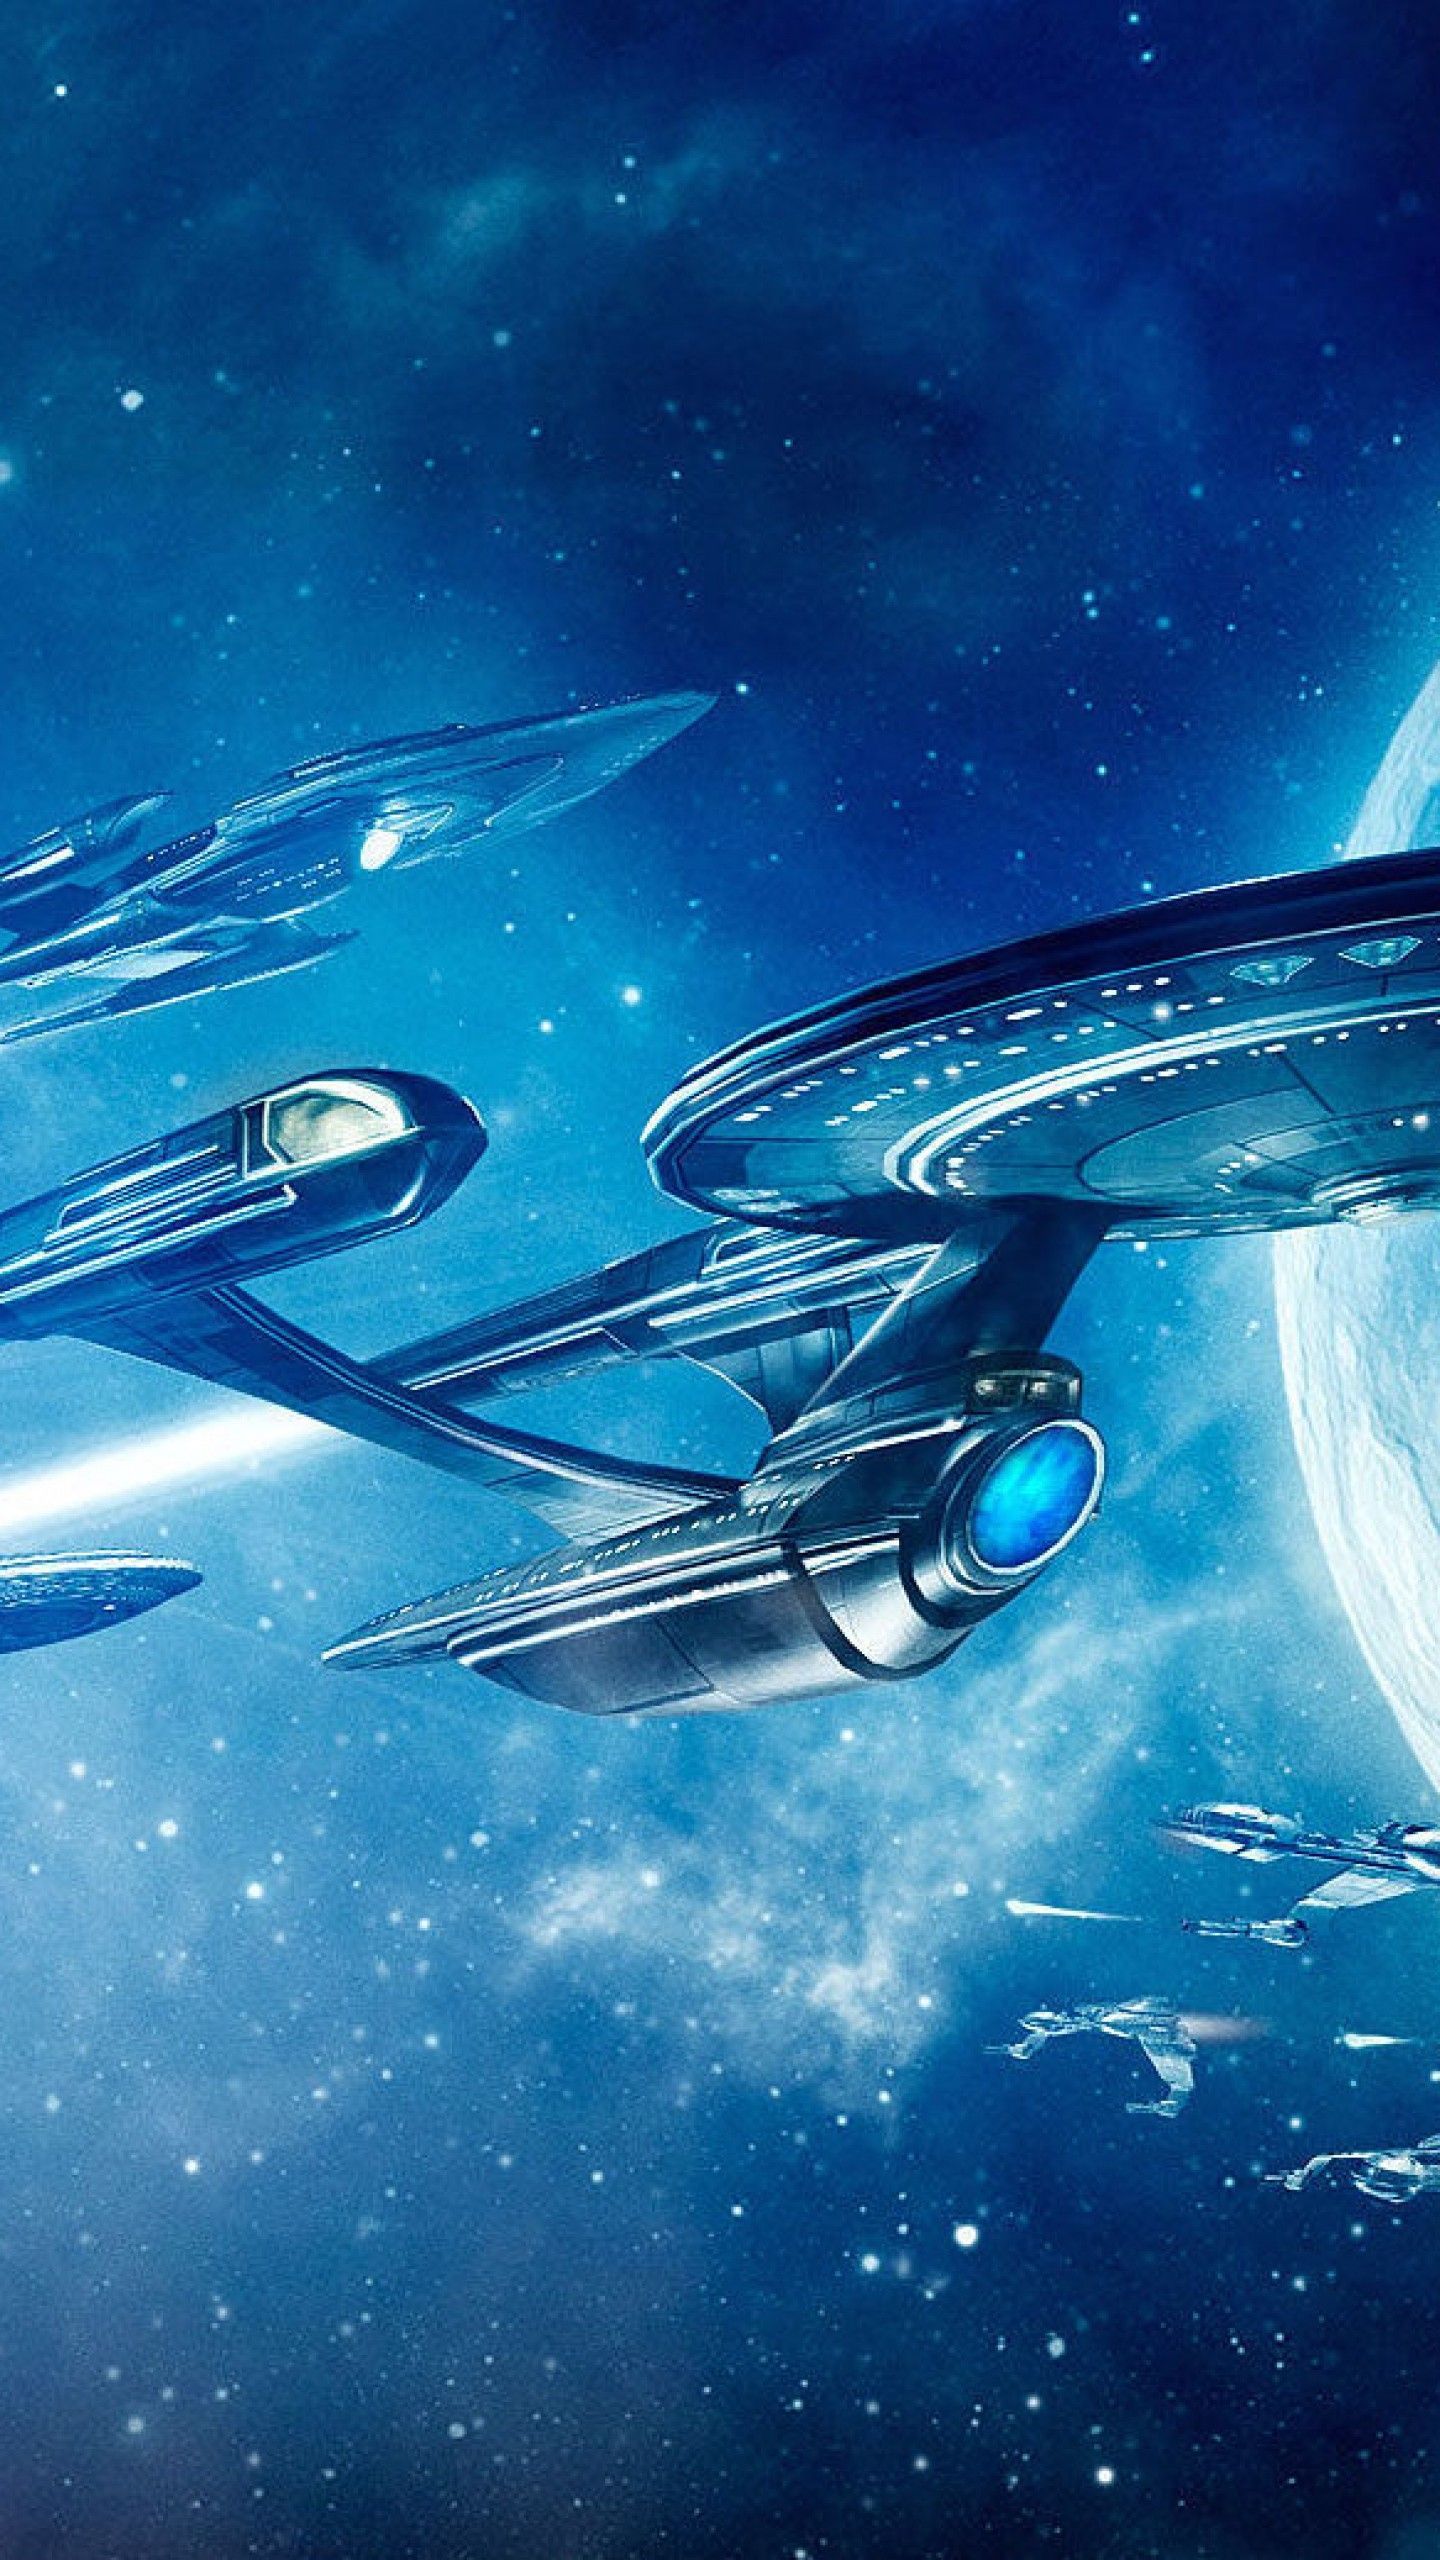 Star Trek Wallpaper Android. Star trek wallpaper, Star trek enterprise ship, Star trek image